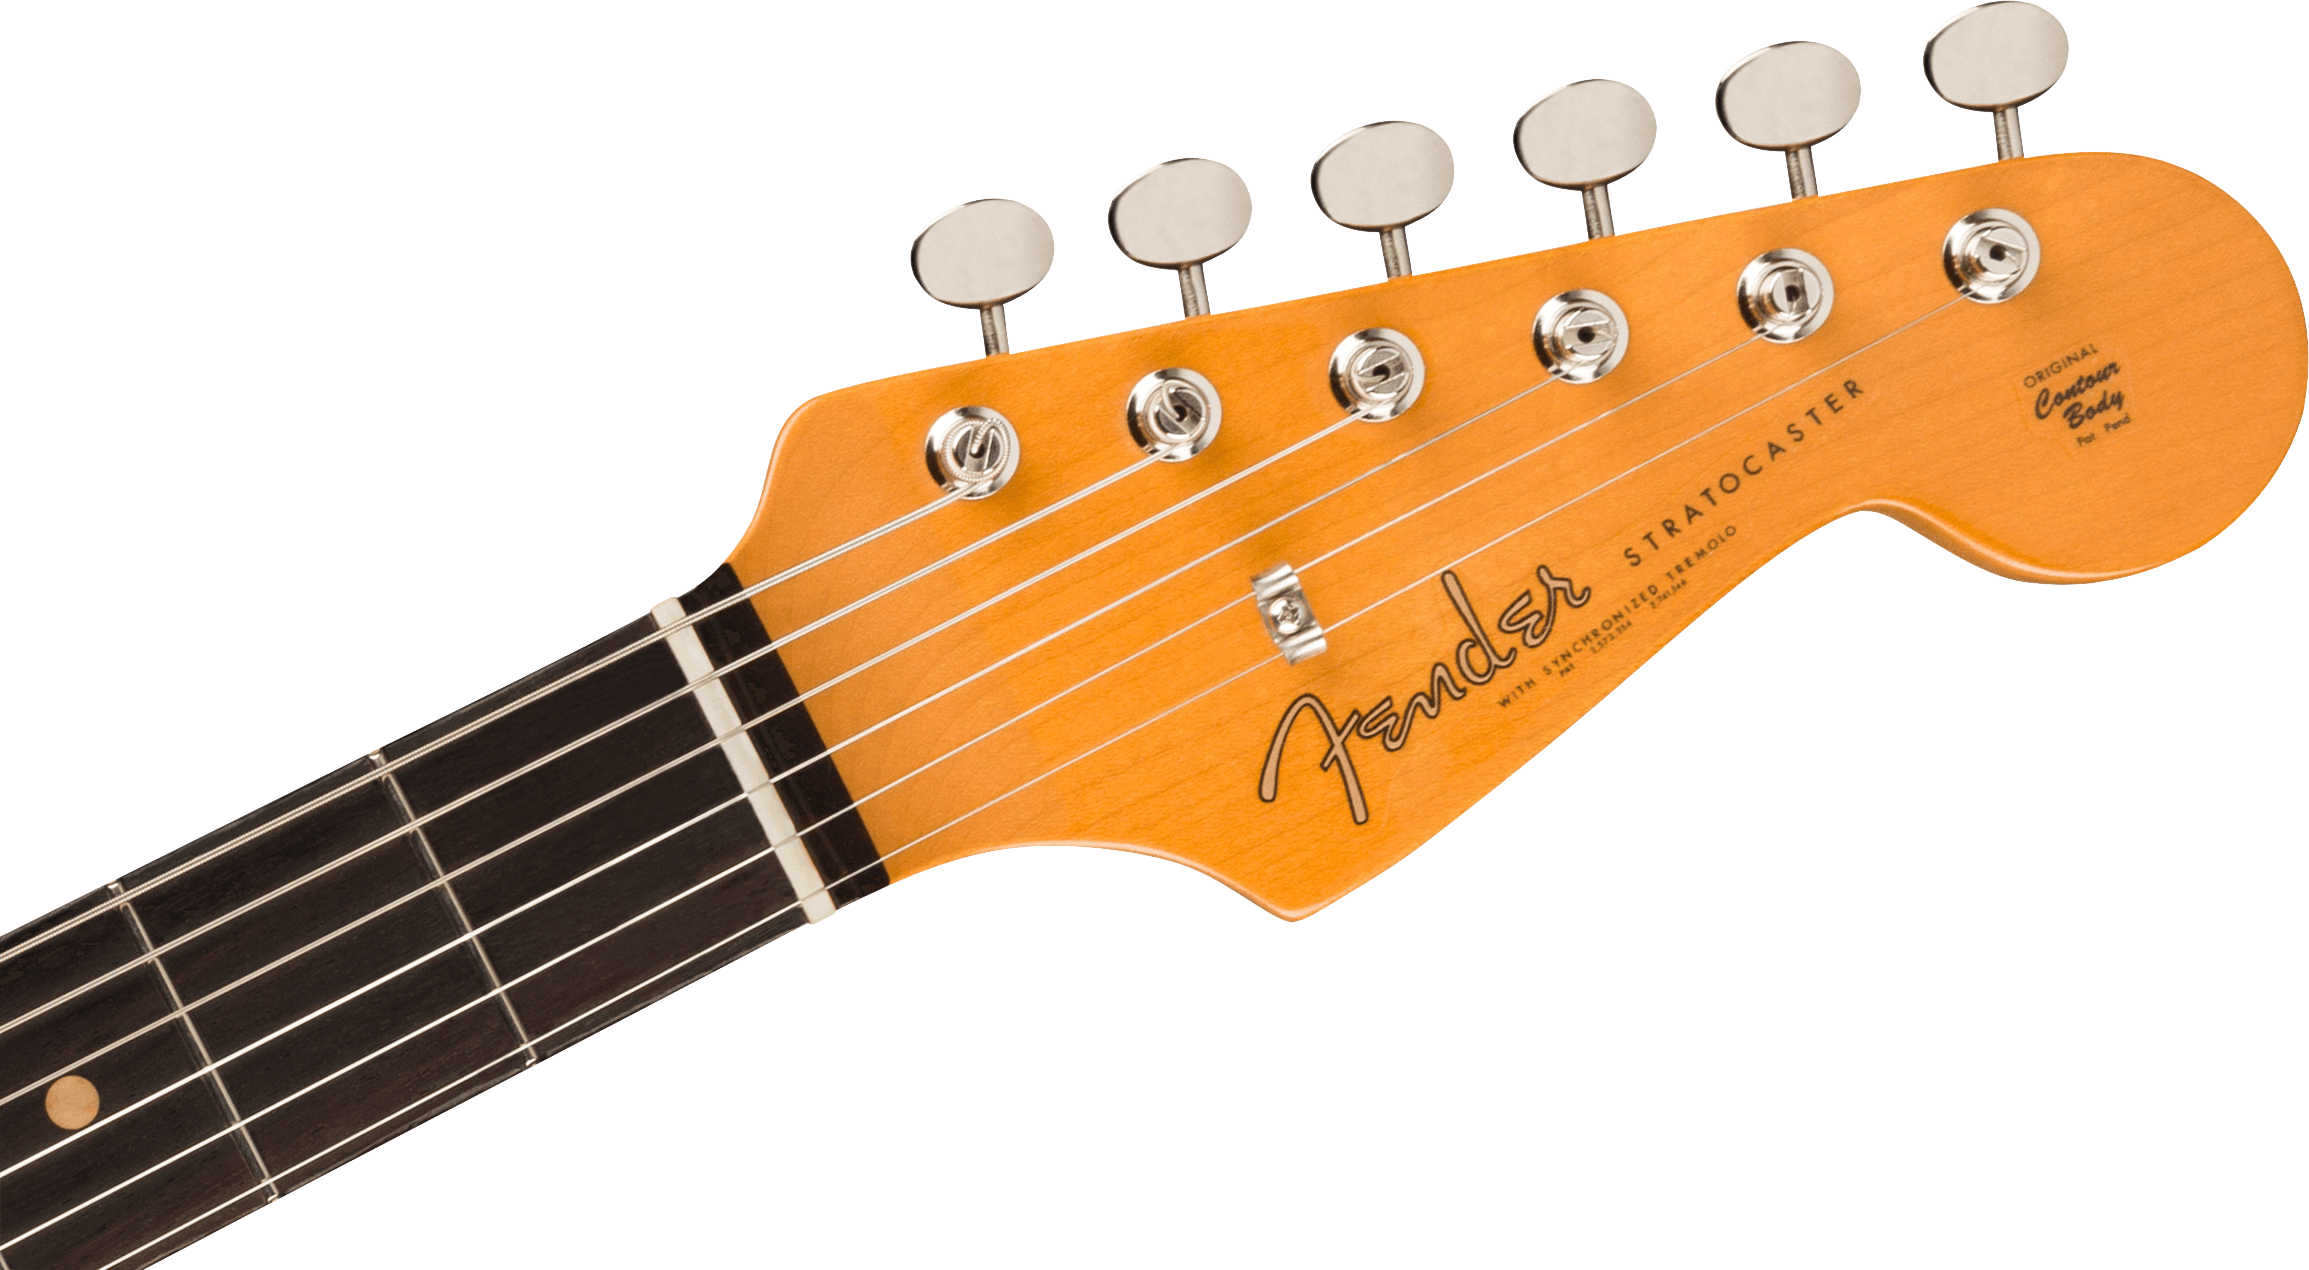 American Vintage II 1961 Stratocaster 3-Color Sunburst